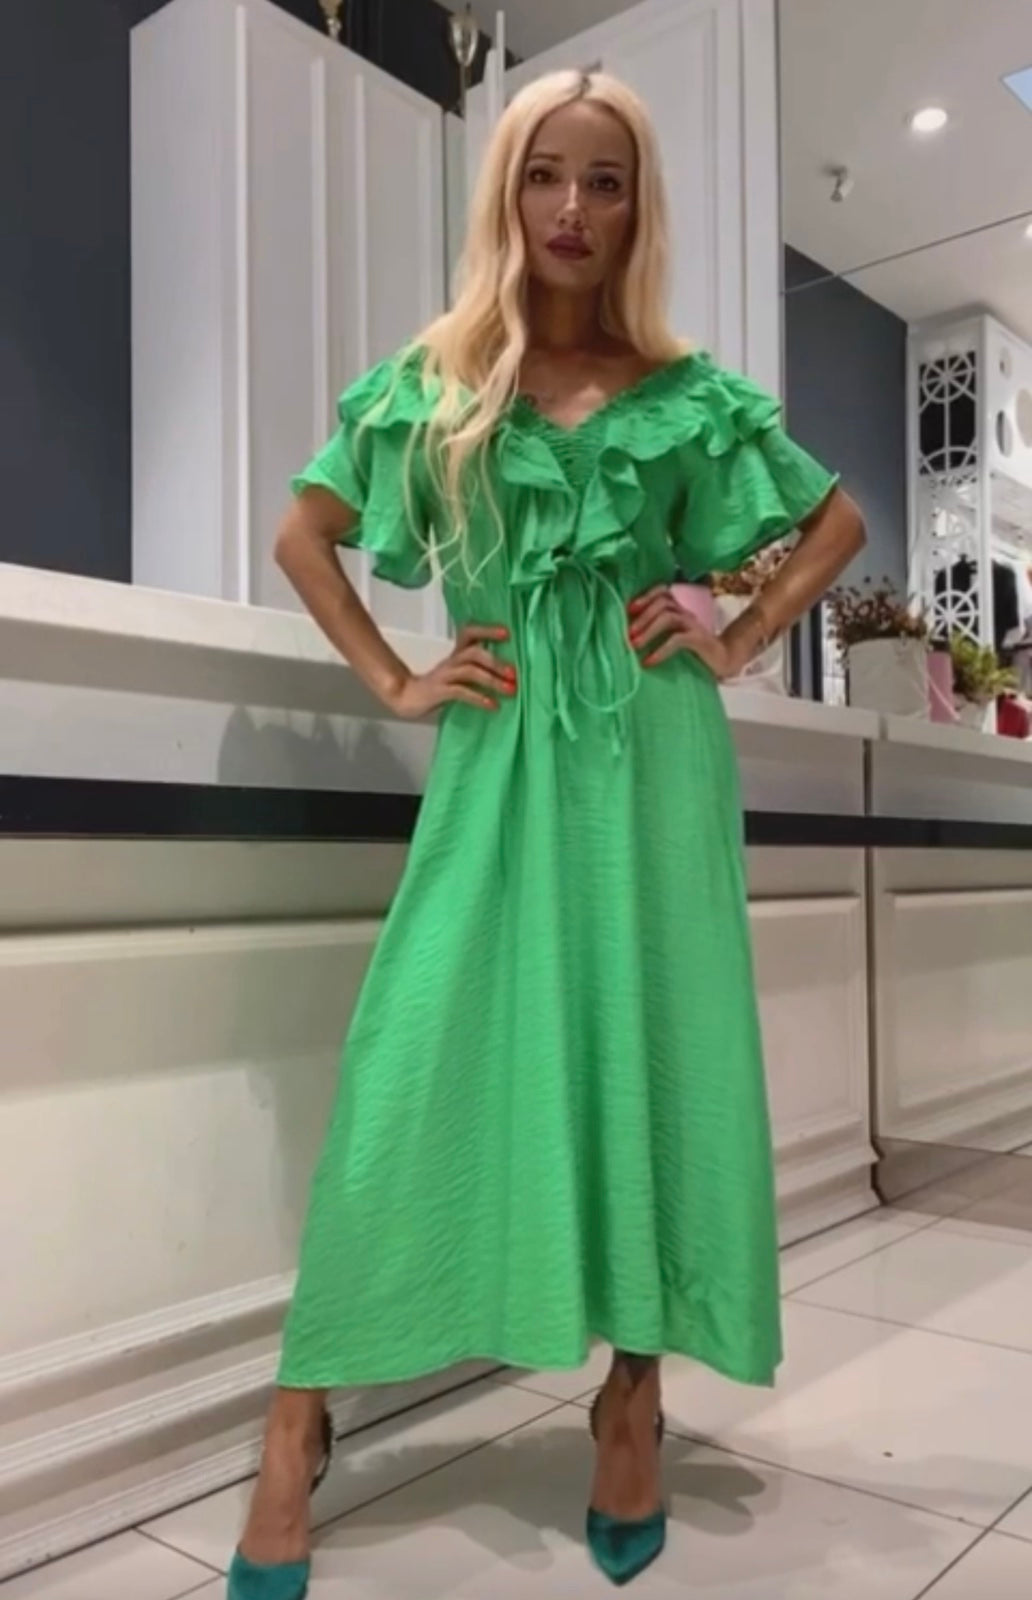 Дамска рокля CARITA GREEN  https://bvseductive.com/products/womans-s-dresses-carita-green  ефирна дълга рокля в зелен цвят модел с разкрояване в долната част идеален избор за Вашата женствена визия 85% памук 15% полиестер